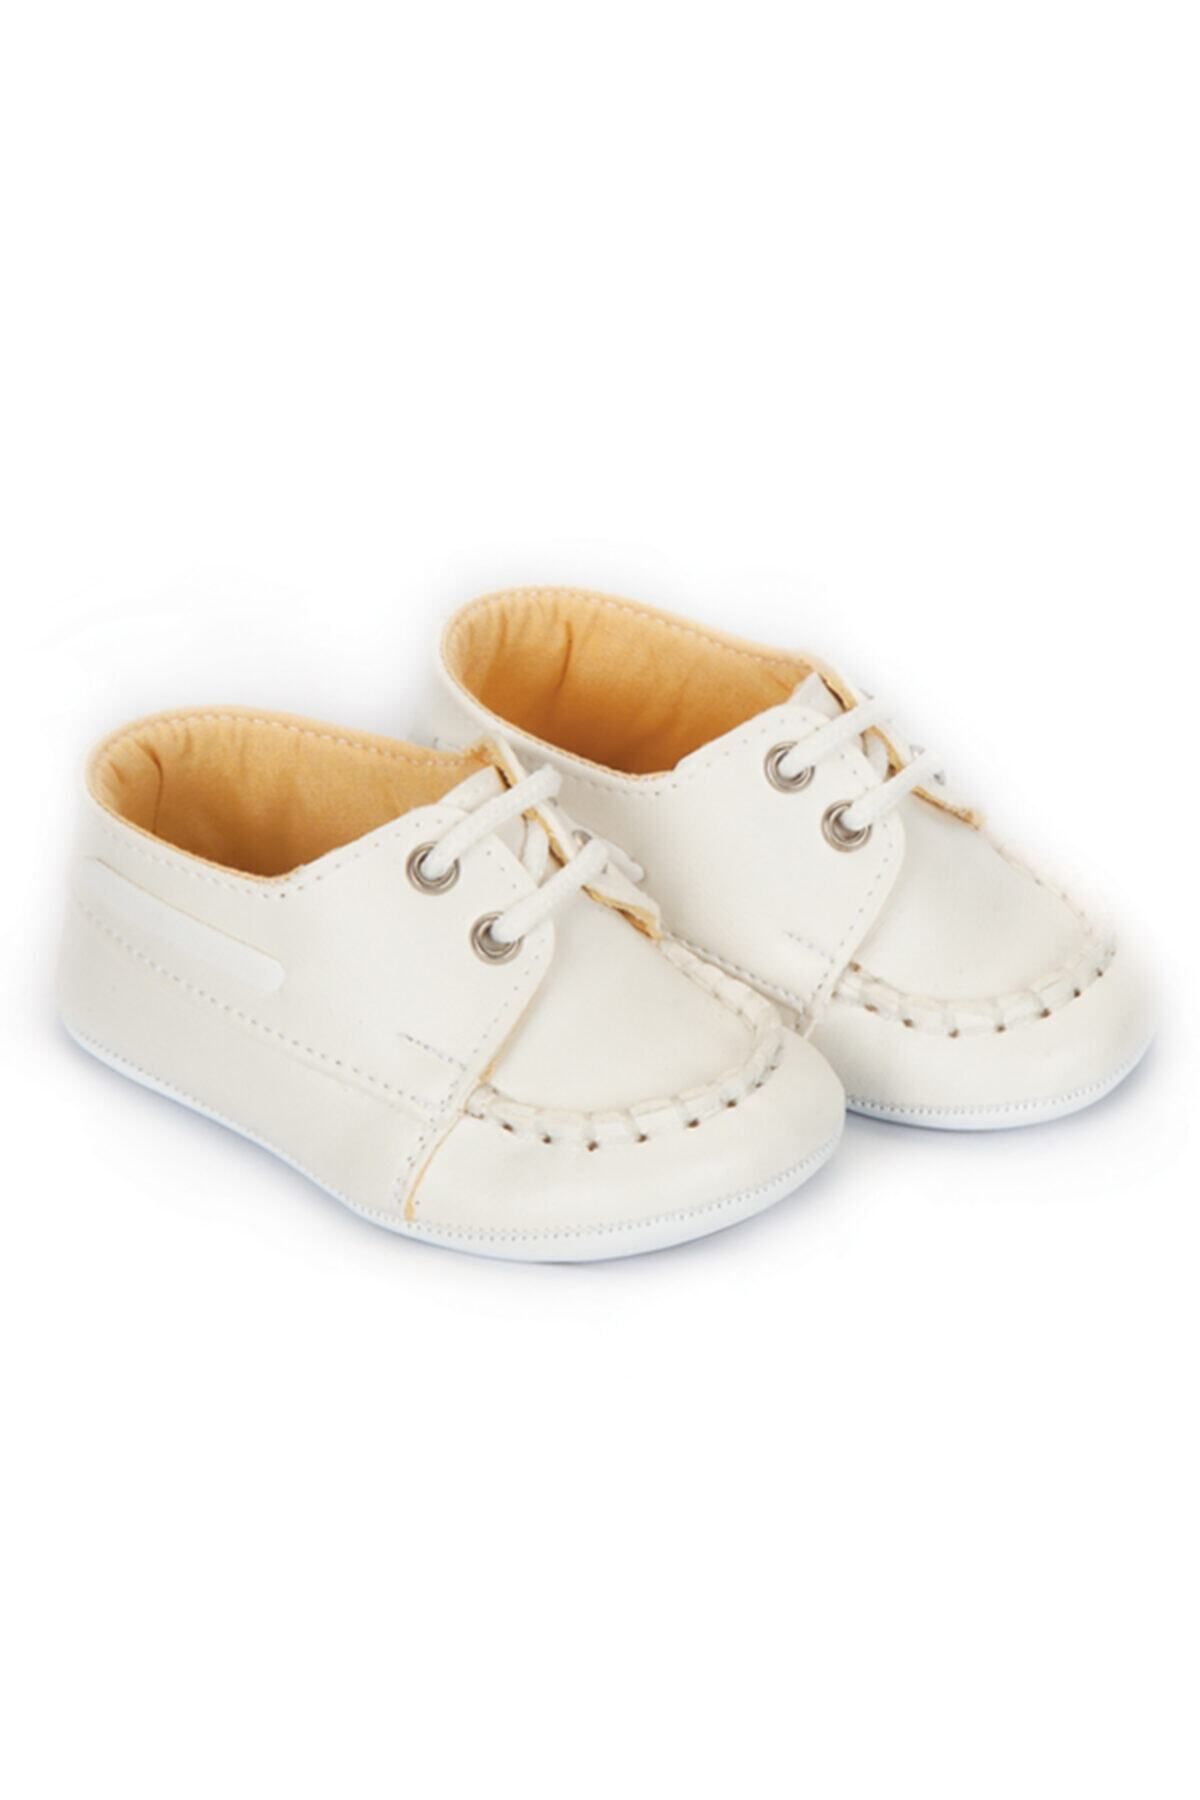 Papulin Unisex Bebek Beyaz  Patik Ayakkabı